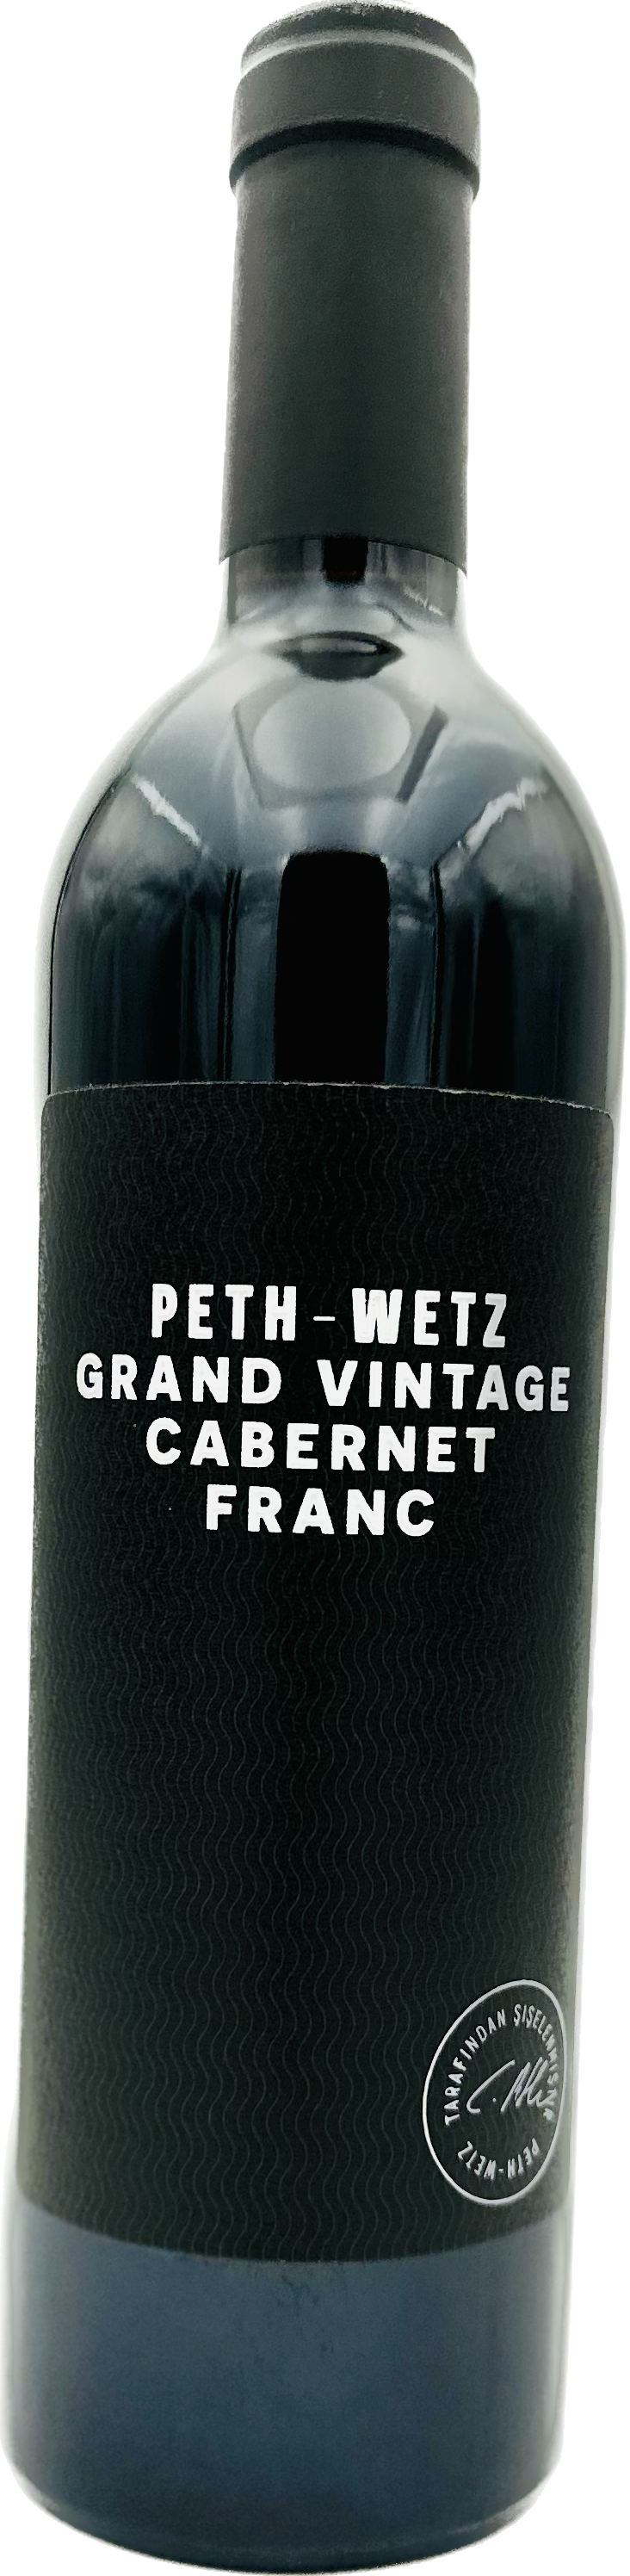 Peth-Wetz Cabernet Franc Grand Vintage 2018